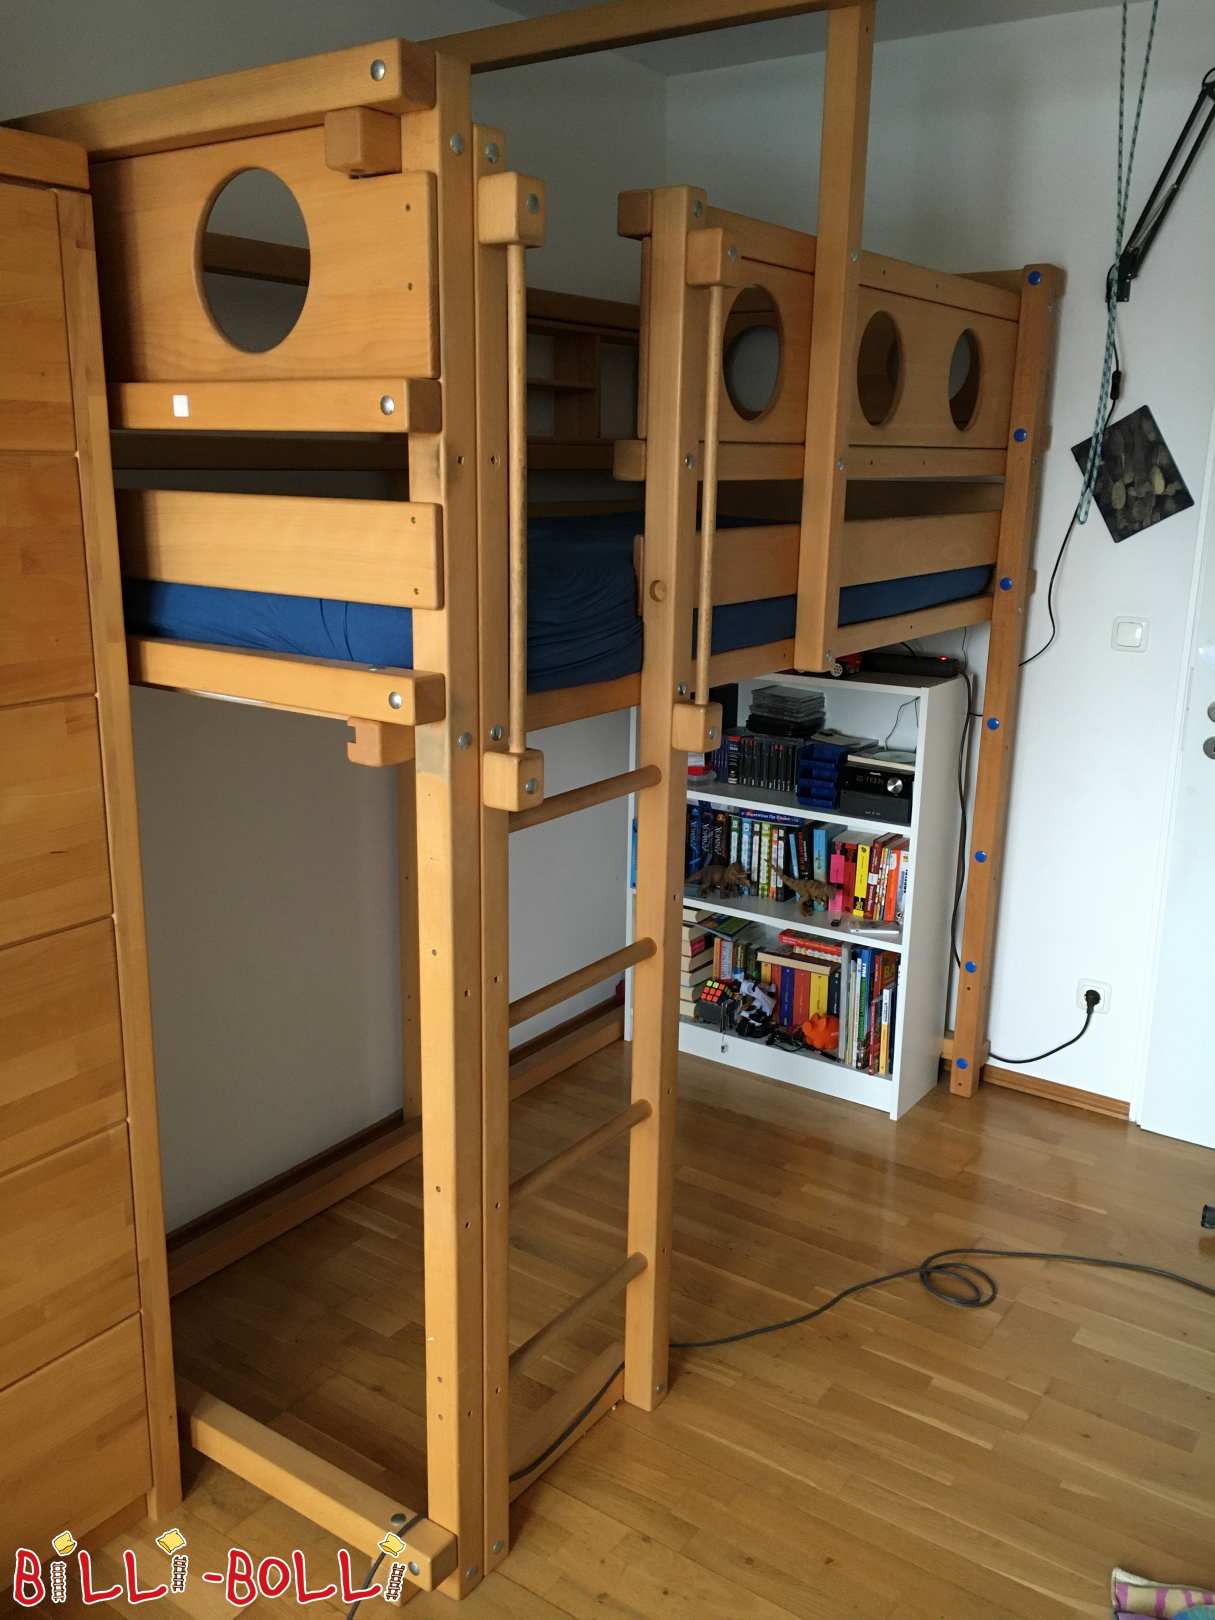 Rostoucí podkrovní postel 90 x 200 cm ve Freisingu (Kategorie: Použitá podkrovní postel)